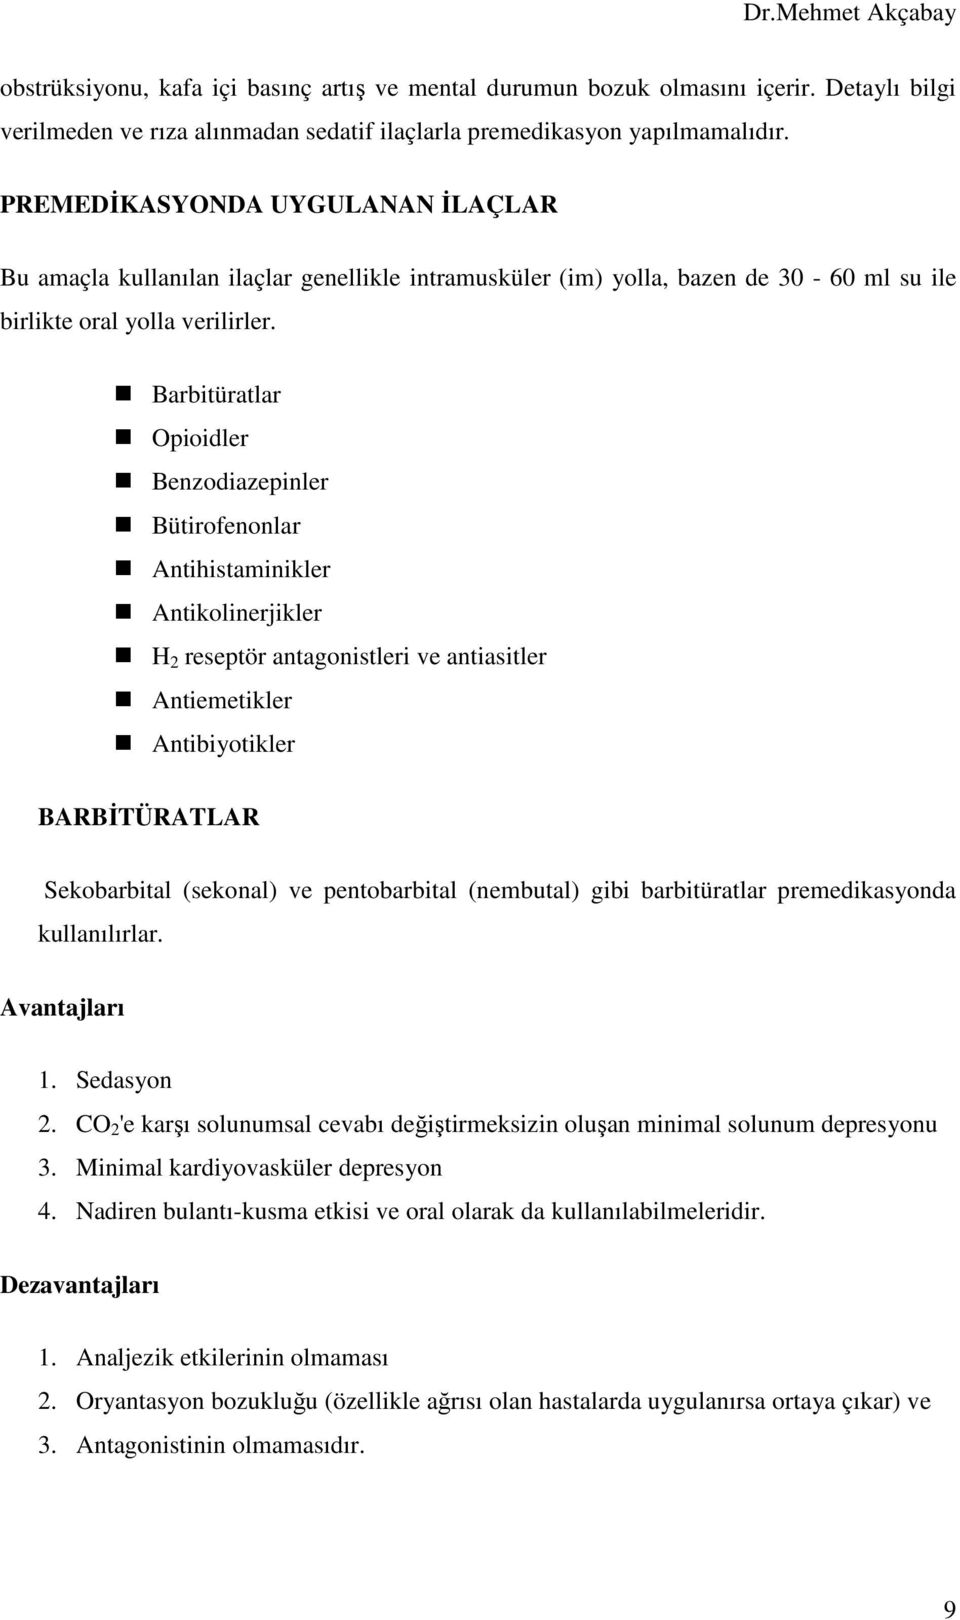 Barbitüratlar Opioidler Benzodiazepinler Bütirofenonlar Antihistaminikler Antikolinerjikler H 2 reseptör antagonistleri ve antiasitler Antiemetikler Antibiyotikler BARBĐTÜRATLAR Sekobarbital